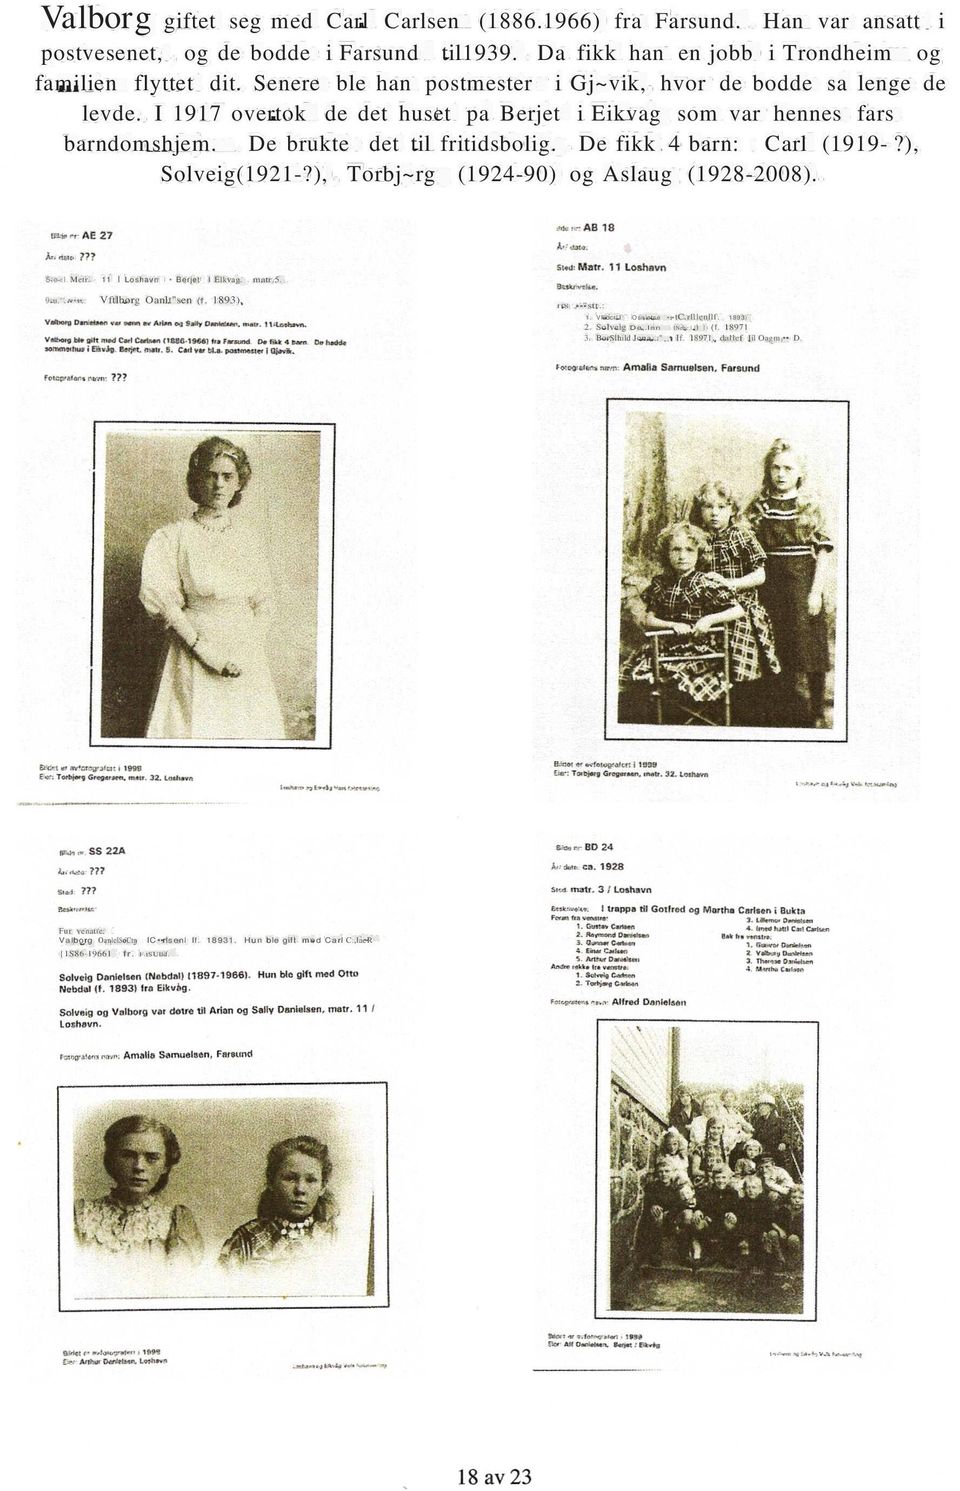 De fikk 4 barn: Carl (1919-?), Solveig(1921-?), Torbj~rg (1924-90) og Aslaug (1928-2008). 5:e<l. Metr. 11 I Loshavn Berjet I Elkvag. matr.5. 9ru,"' : Vftlborg Oanlt"sen (f. 1893). ff8. "stt.: 1.